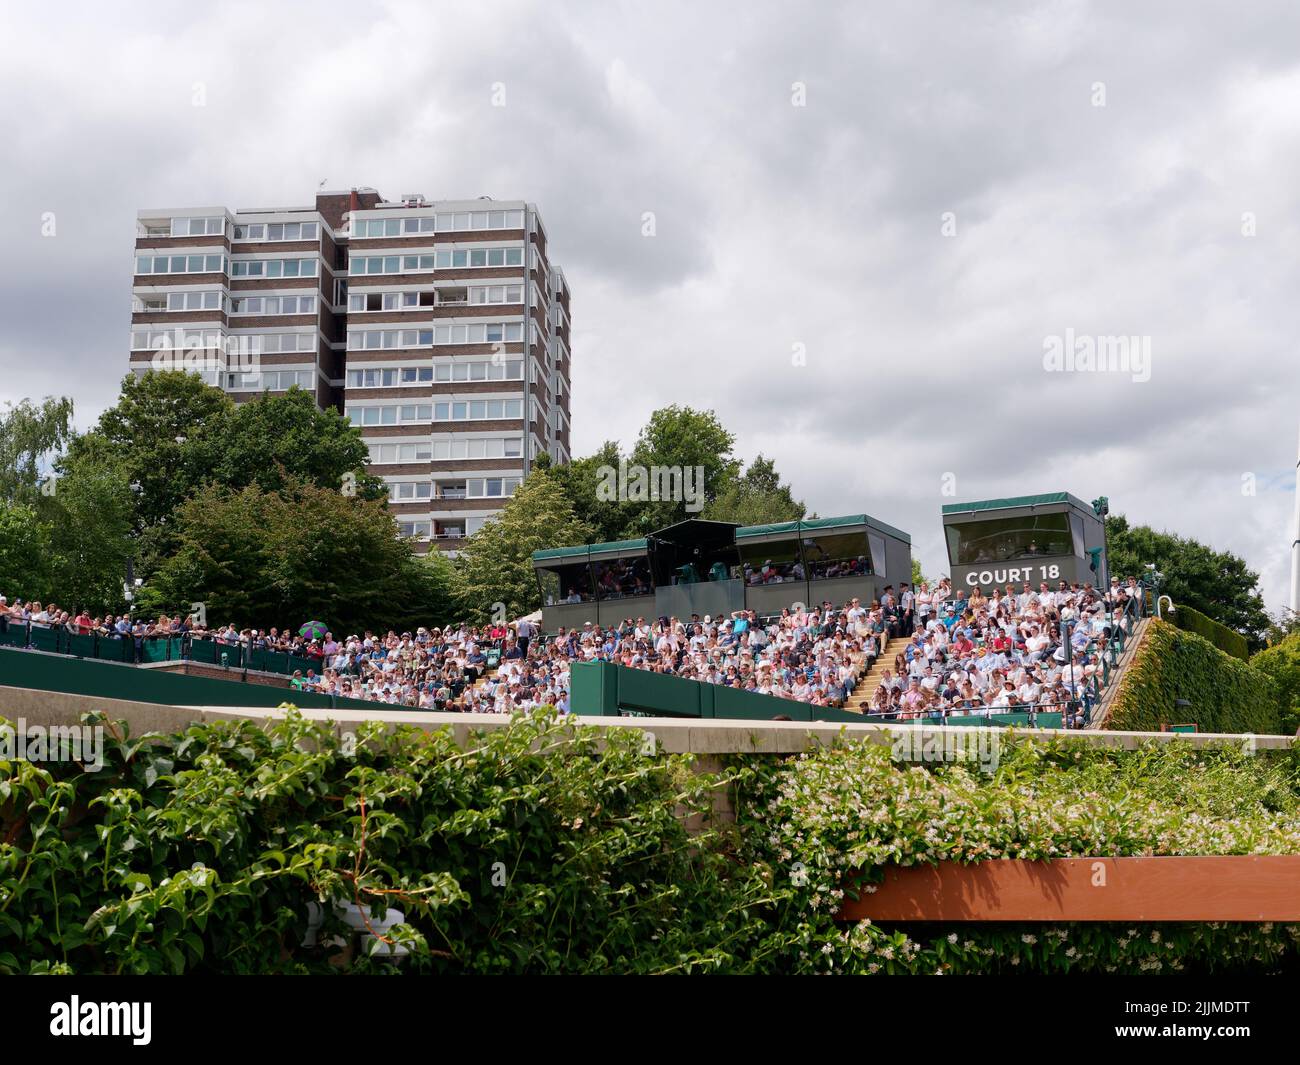 Wimbledon, Gran Londres, Inglaterra, Julio 02 2022: Campeonato de Tenis de Wimbledon. Fuera de la cancha llena de espectadores y un bloque cercano de pisos Foto de stock